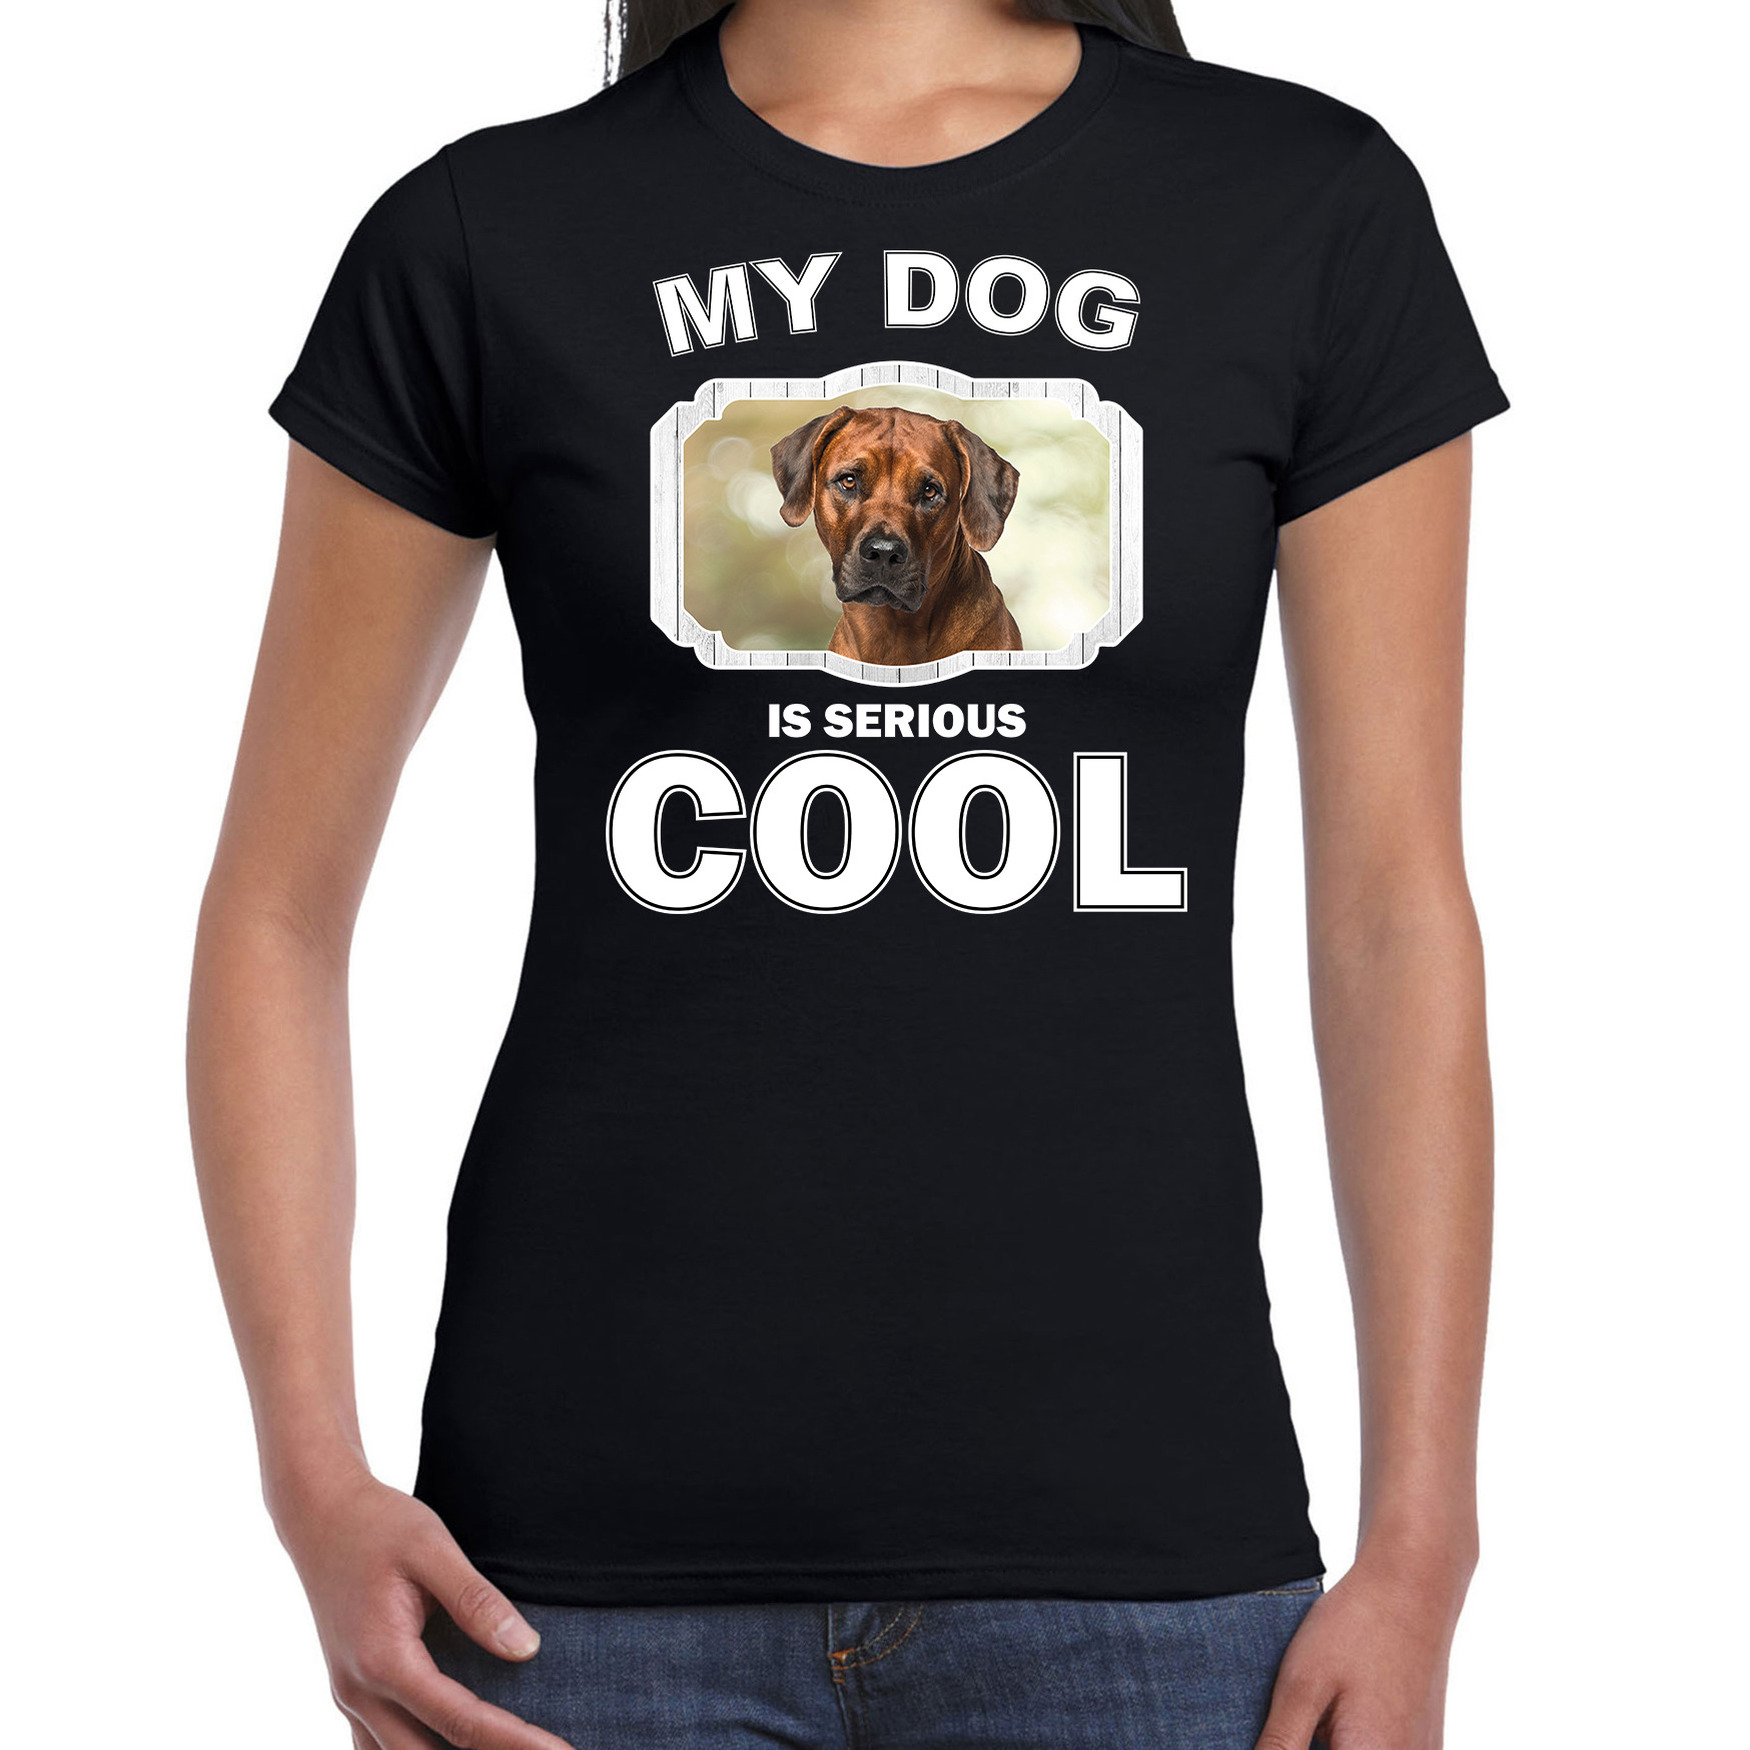 Pronkruggen honden t-shirt my dog is serious cool zwart voor dames